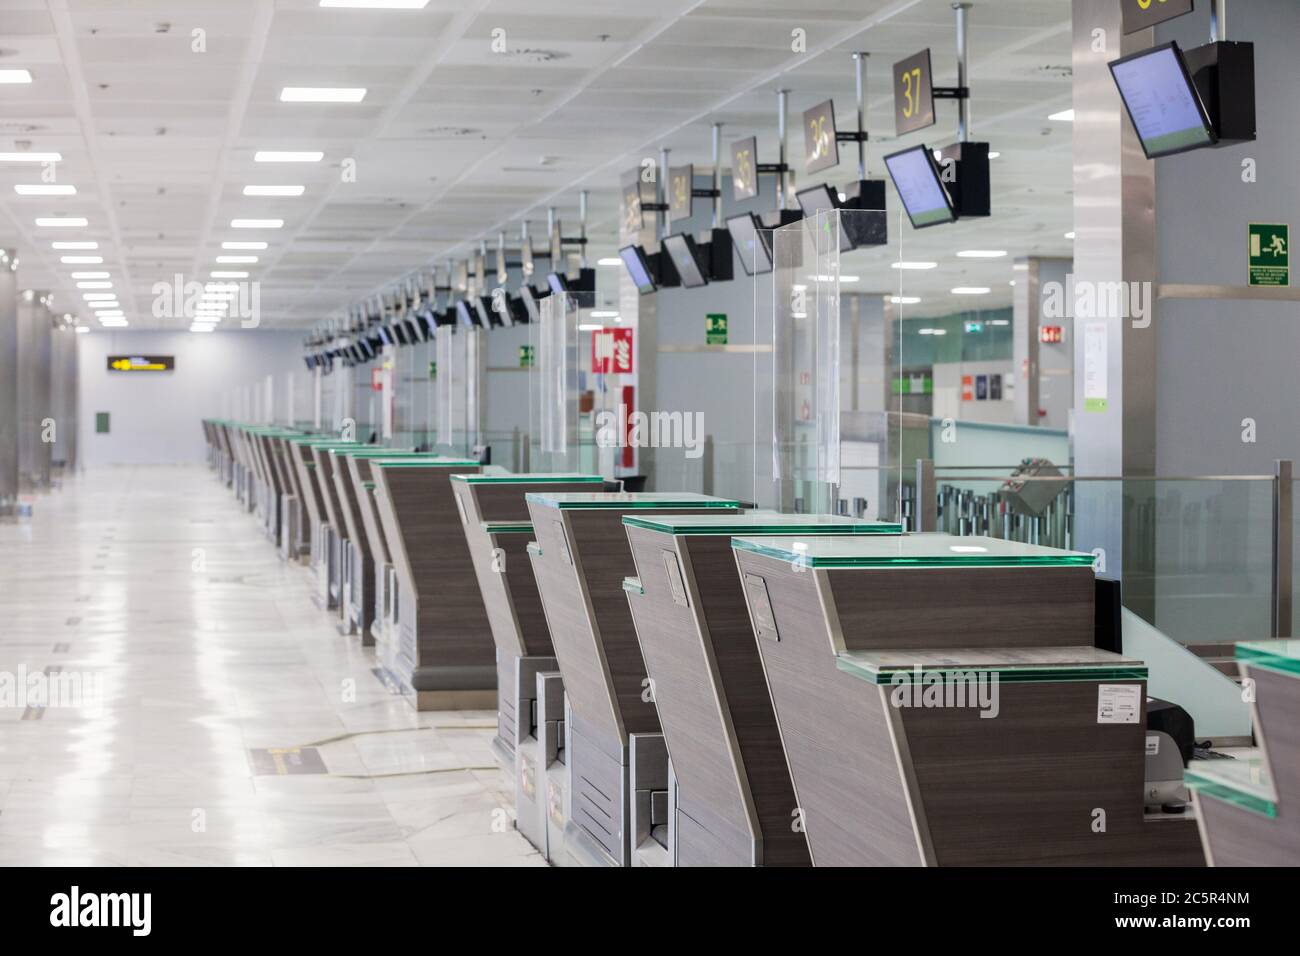 Vider le terminal inutilisé, Lonuge, comptoirs d'enregistrement à l'aéroport de Tenerife Sud, zone des départs, en raison des restrictions de voyage liées à l'épidémie de coronavirus Covid-19. Banque D'Images